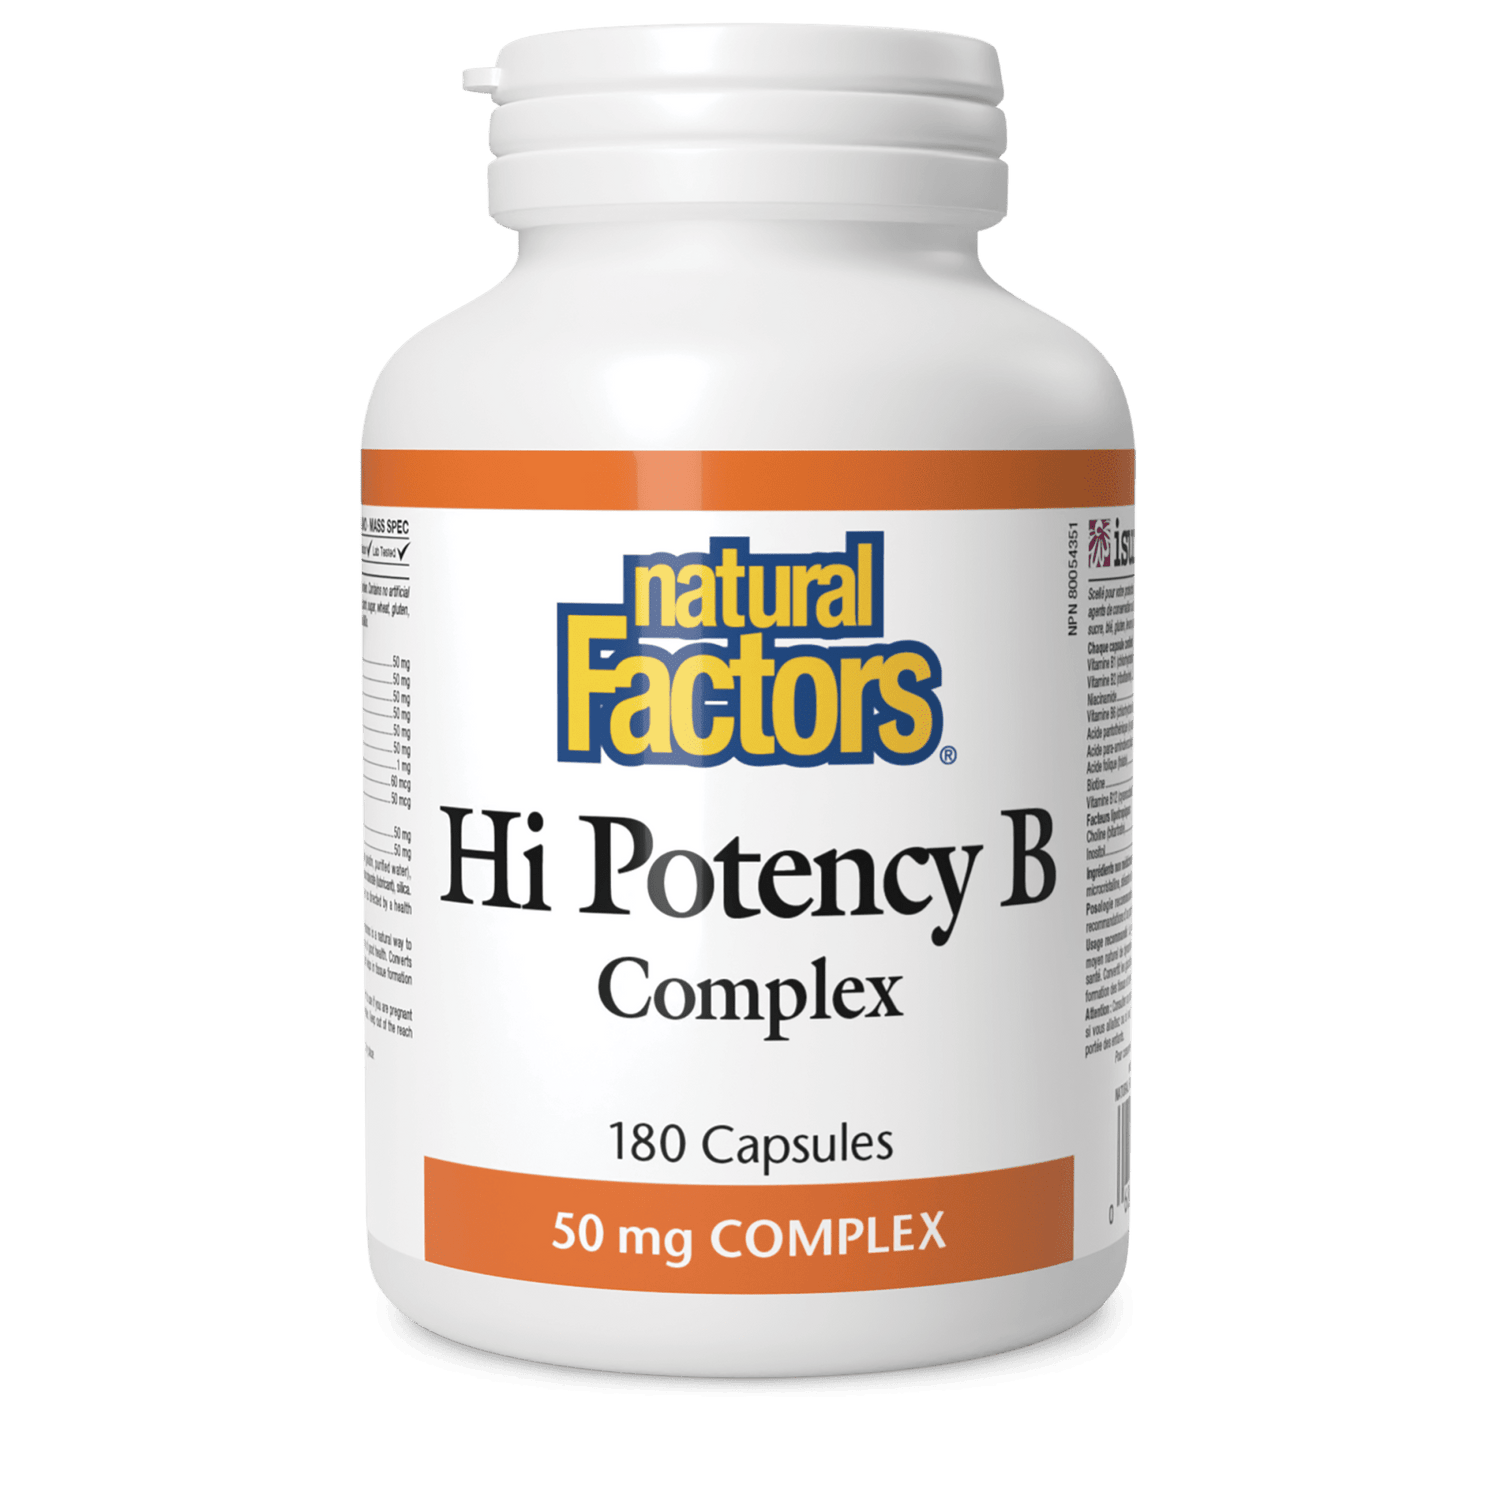 Hi Potency B Complex 50 mg, Natural Factors|v|image|1122